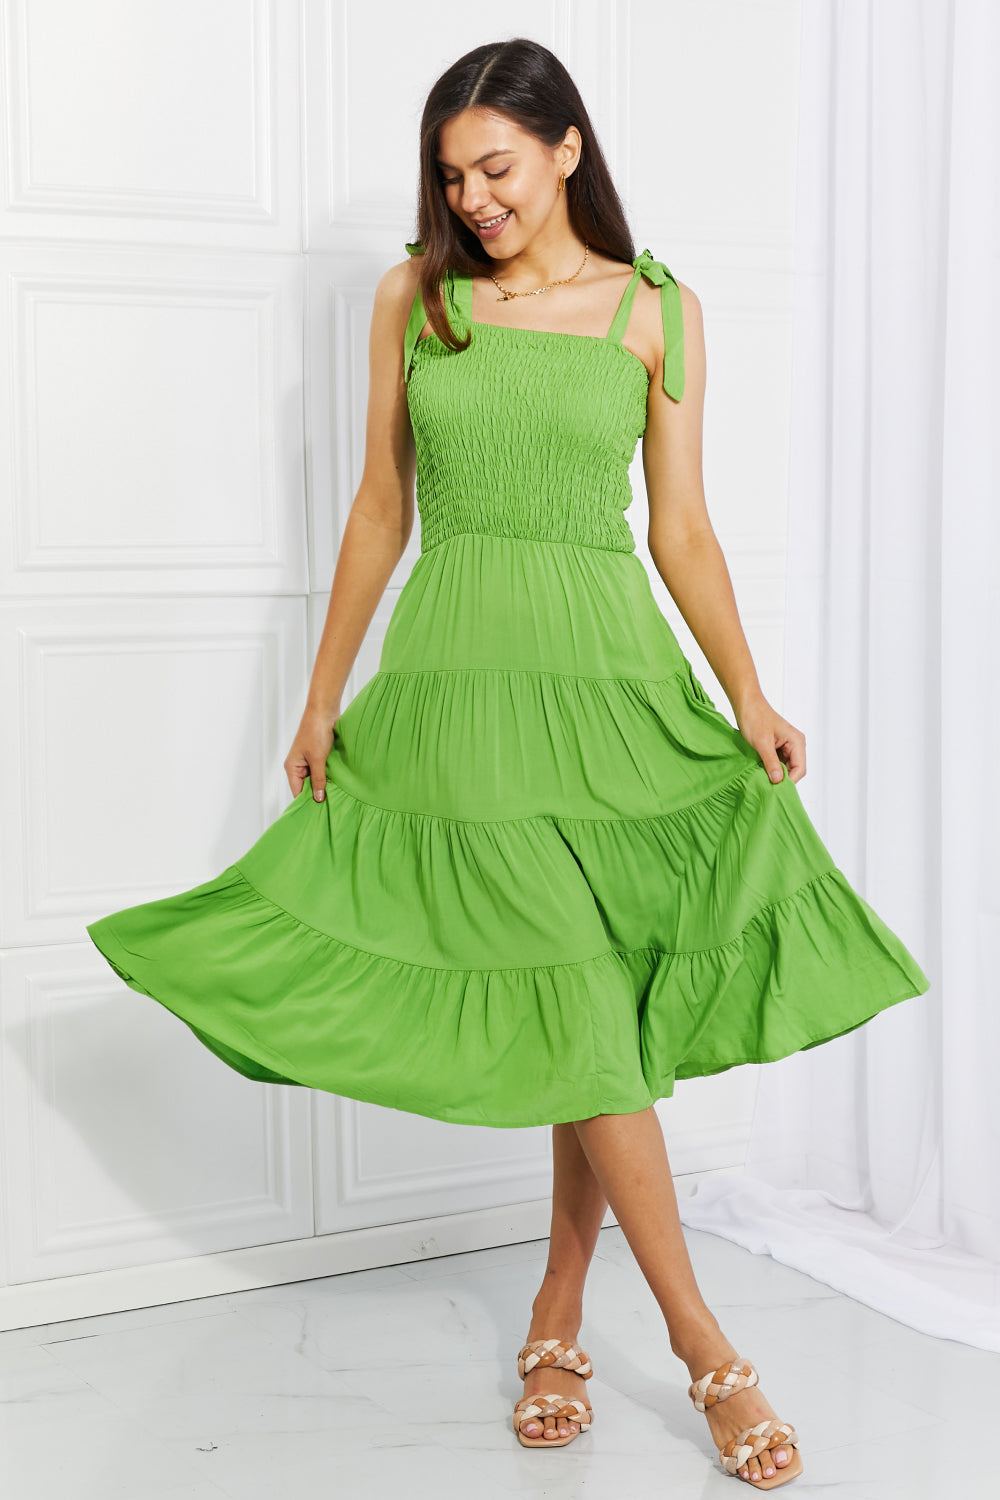 Luminous Lime Dress: Radiate Vibrance Midi Dress